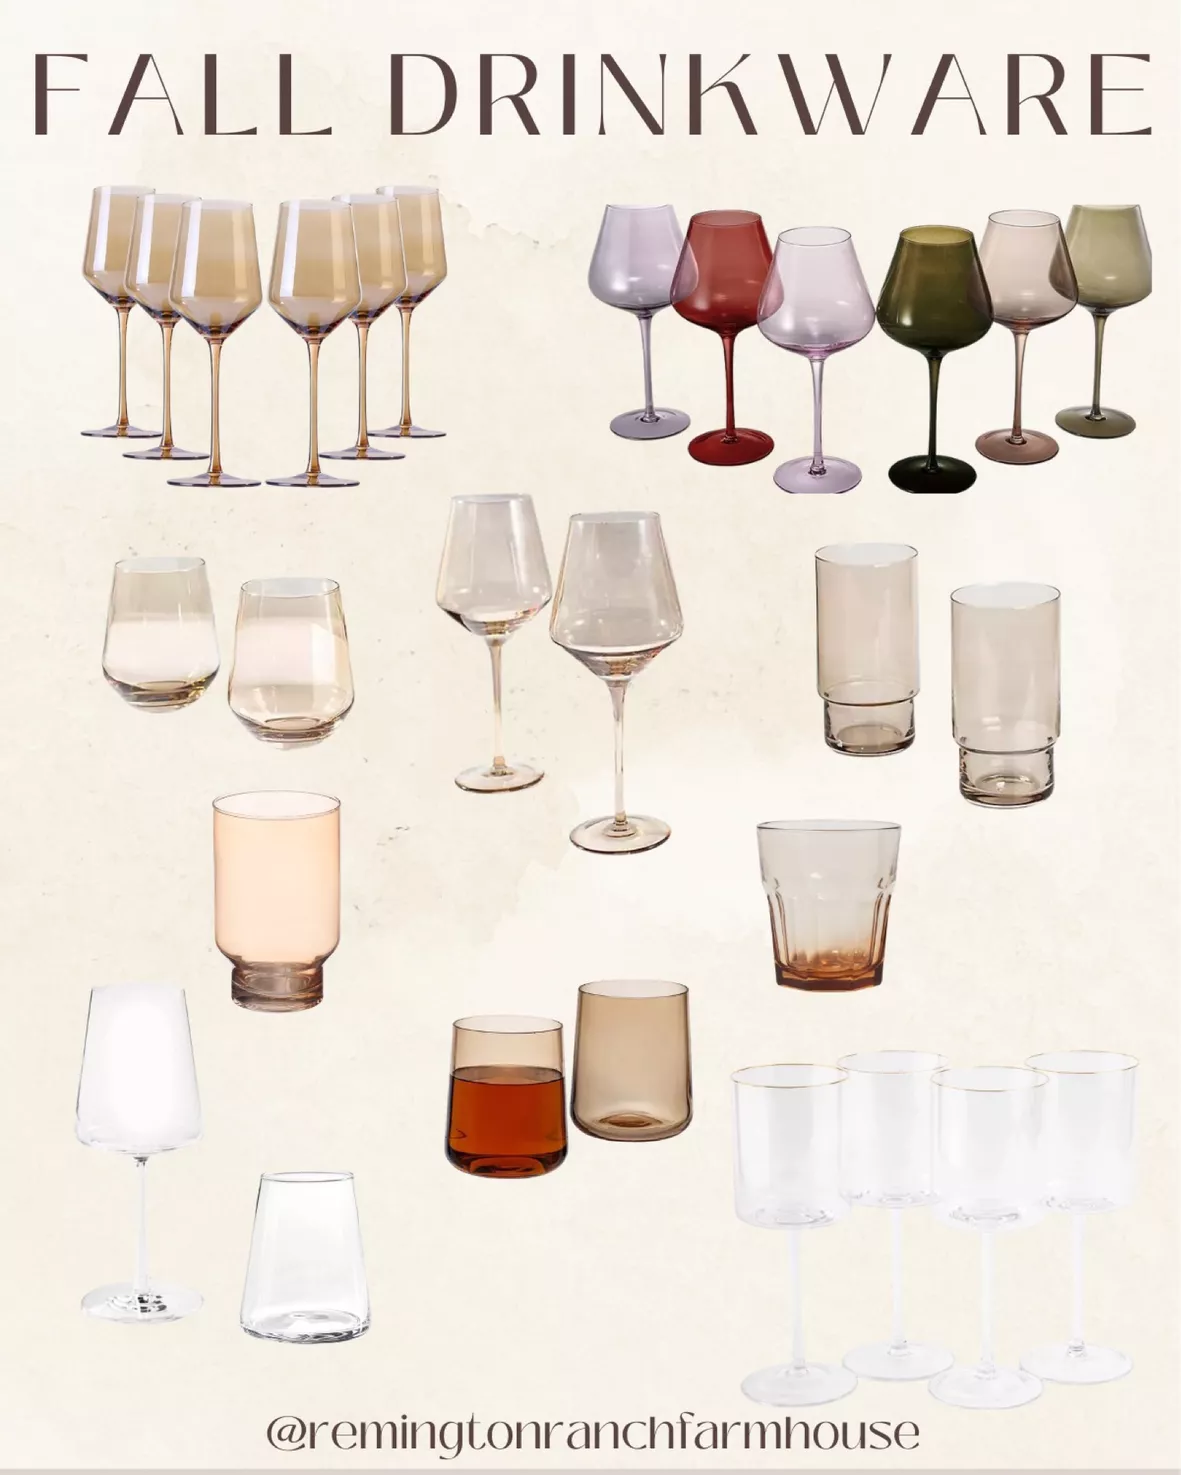 At Home Essentials Set of 4 Stemmed Wine Glasses, 15oz